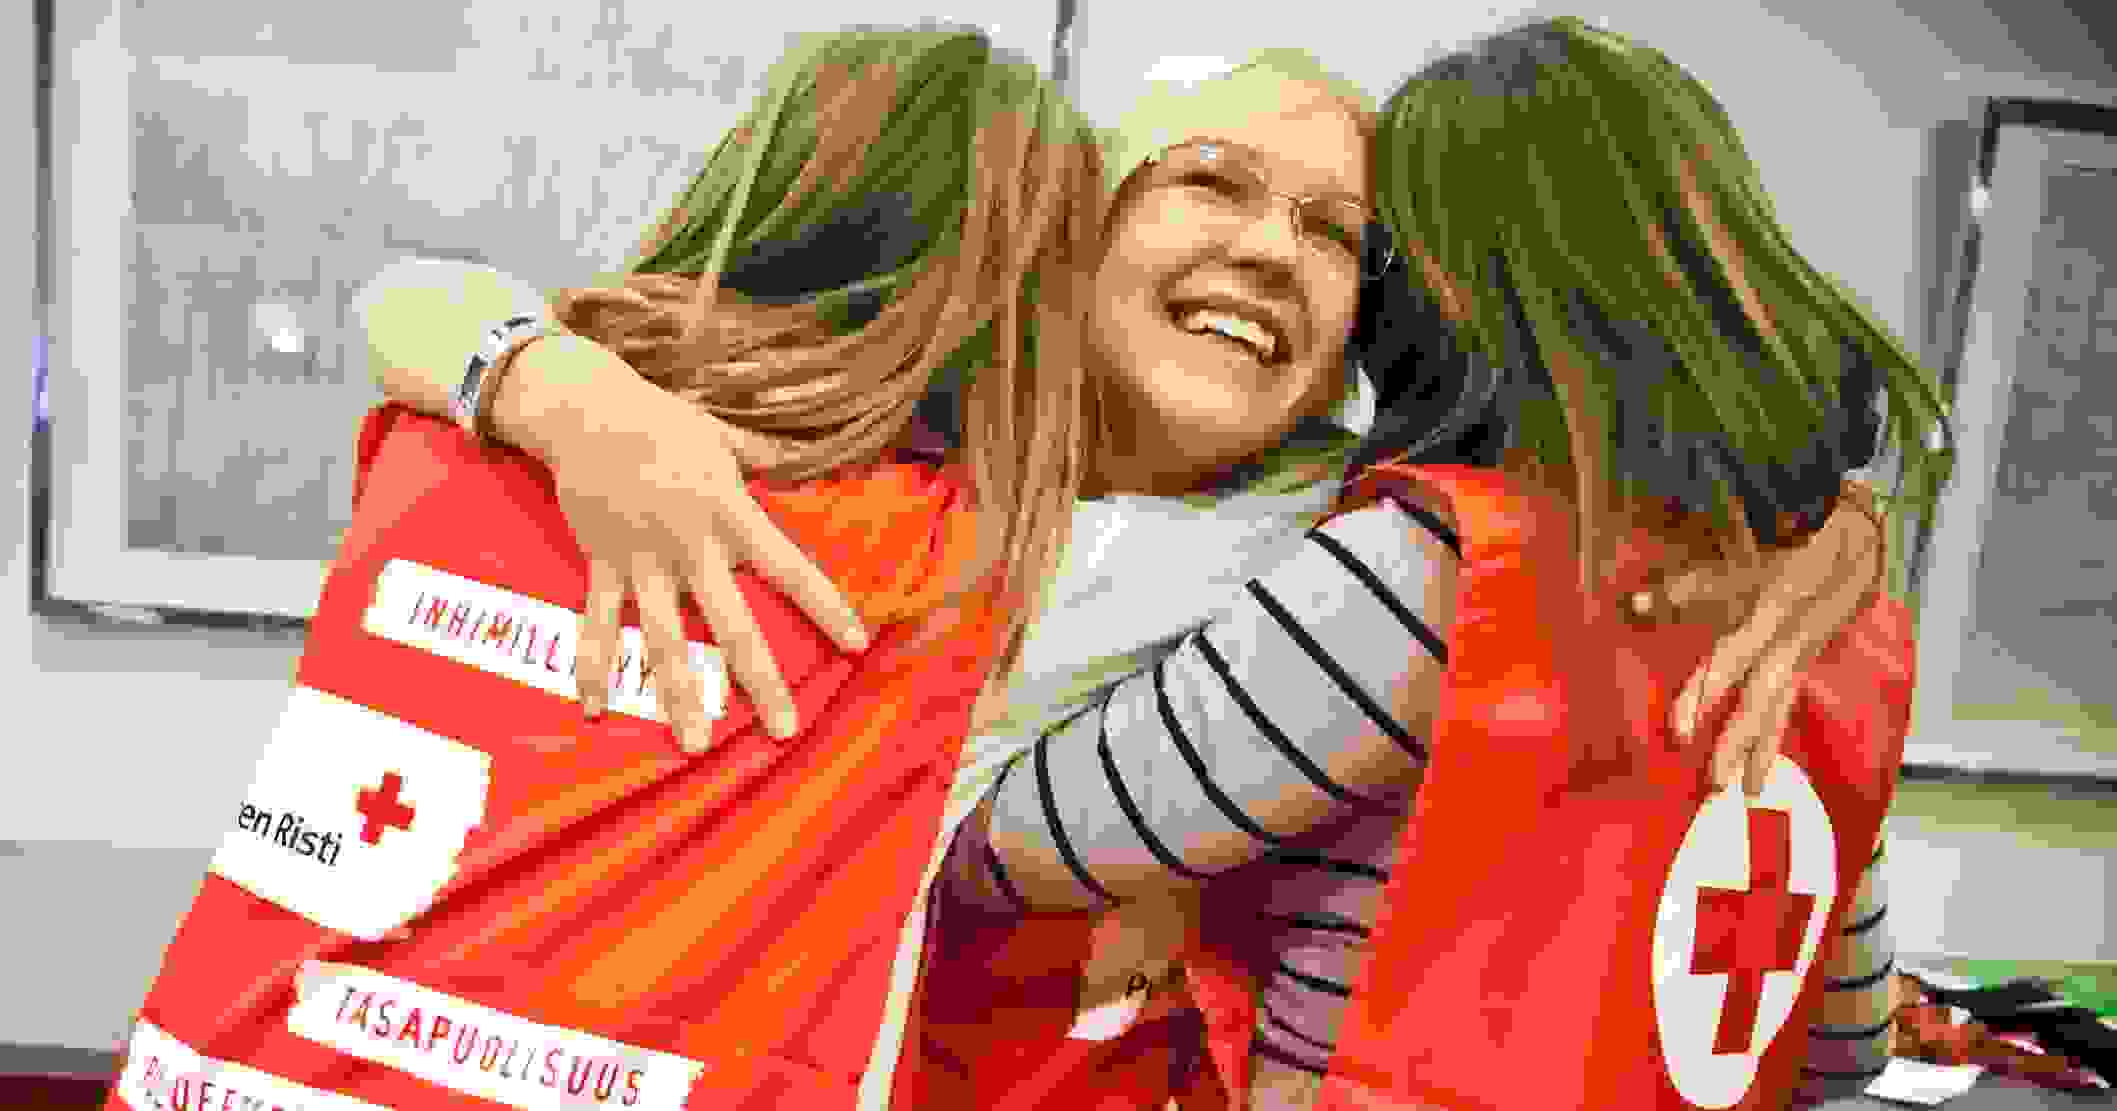 Kolme nuorta naista Punaisen Ristin vapaaehtoisliiveissä hymyilee ja halaa toisiaan.